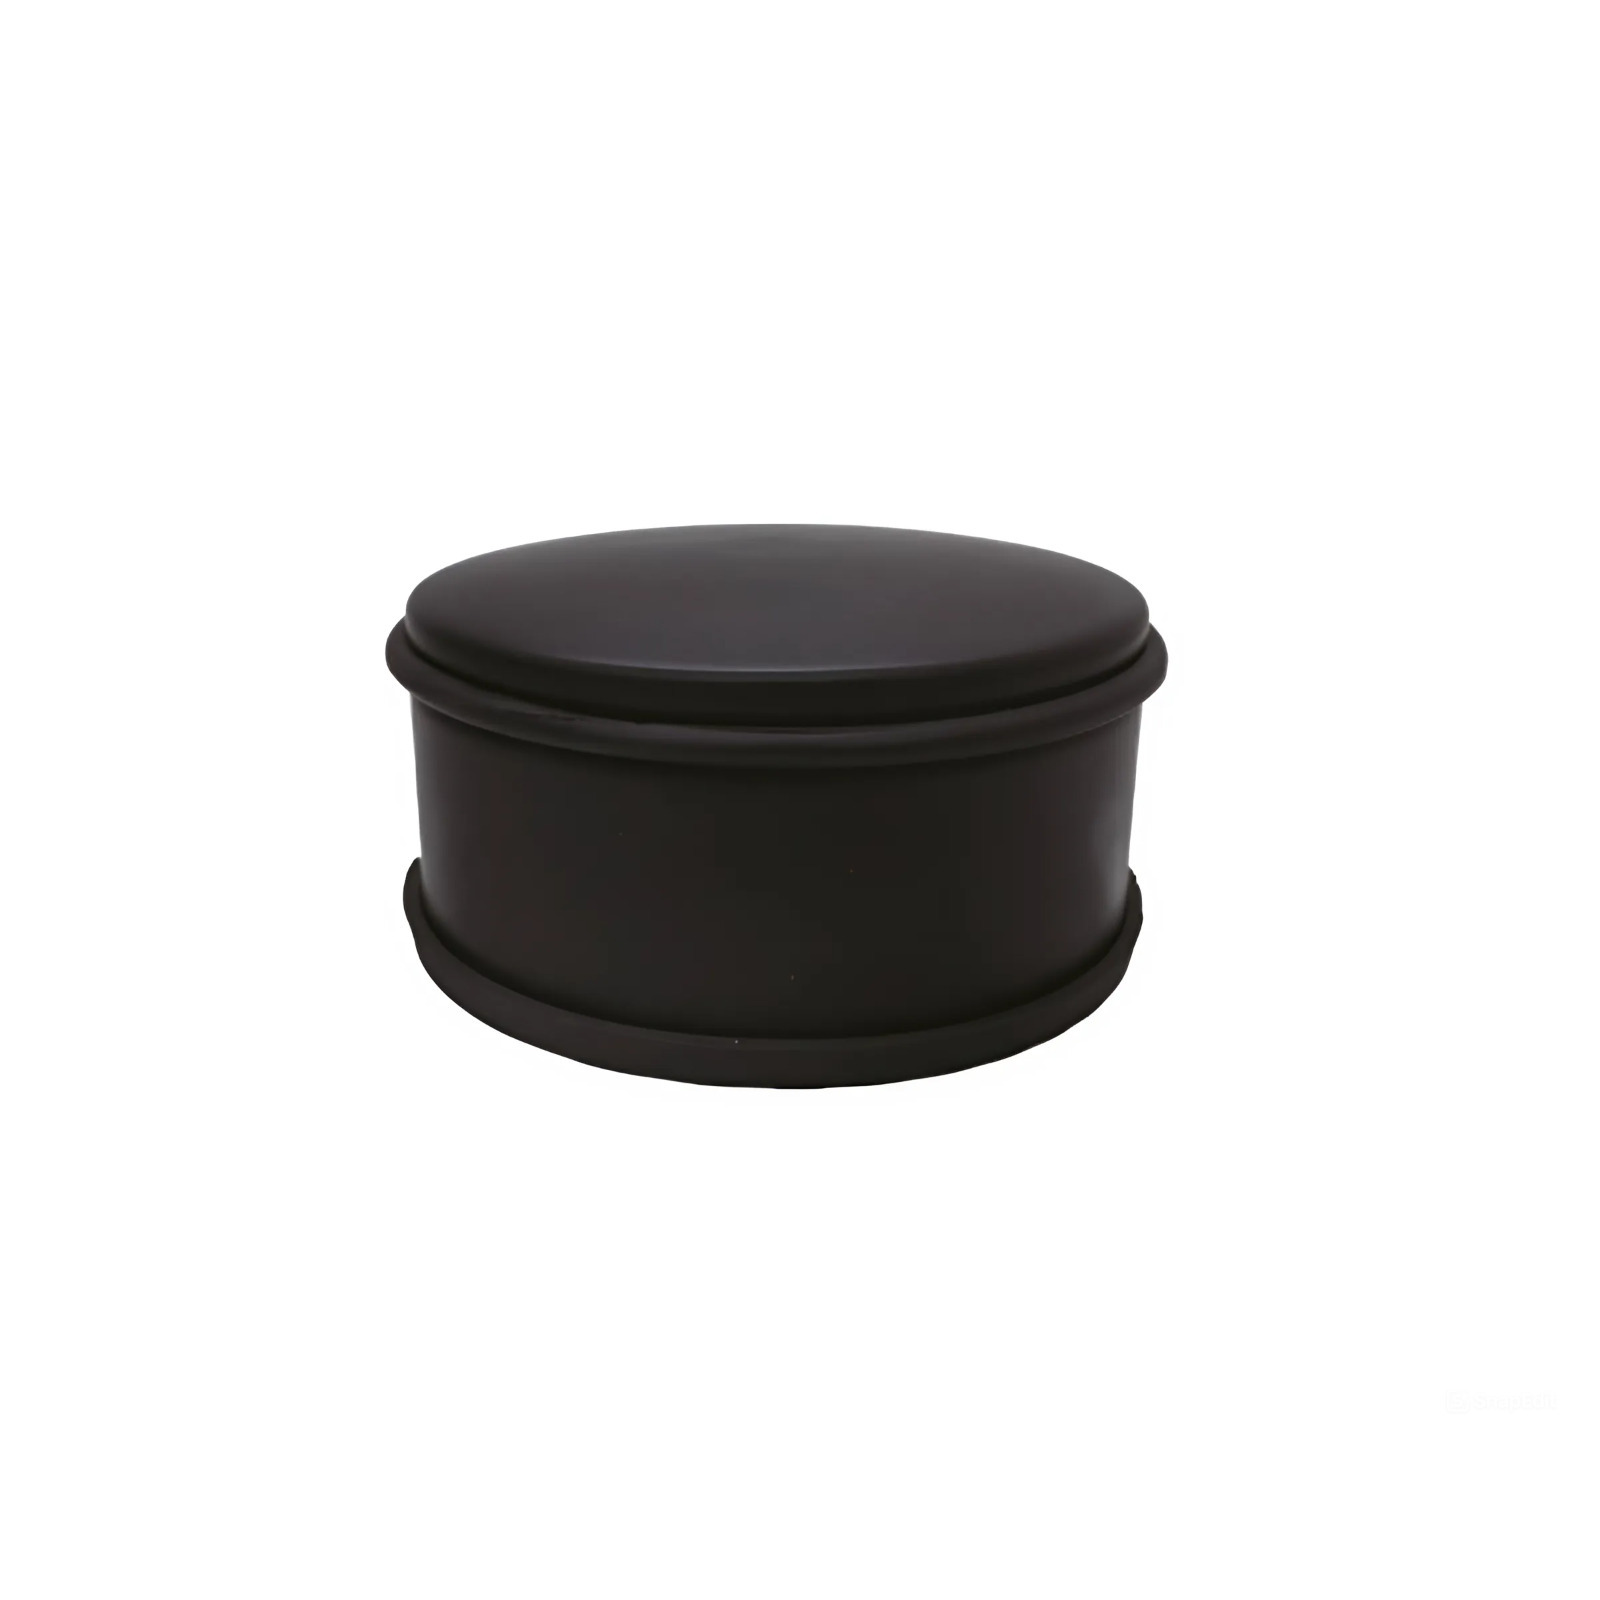 Benson Deurstopper voor binnendeuren - zwart - rond - 1,2 kg - 12 x 6 cm - met rubberen rand -